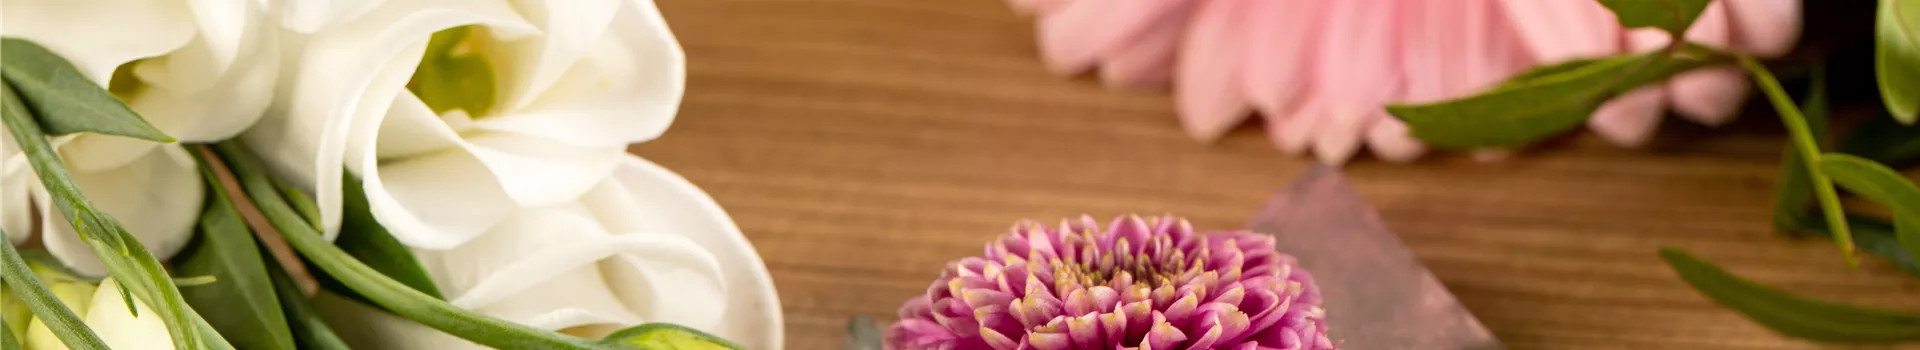 Schnittblumen - was hilft wirklich?